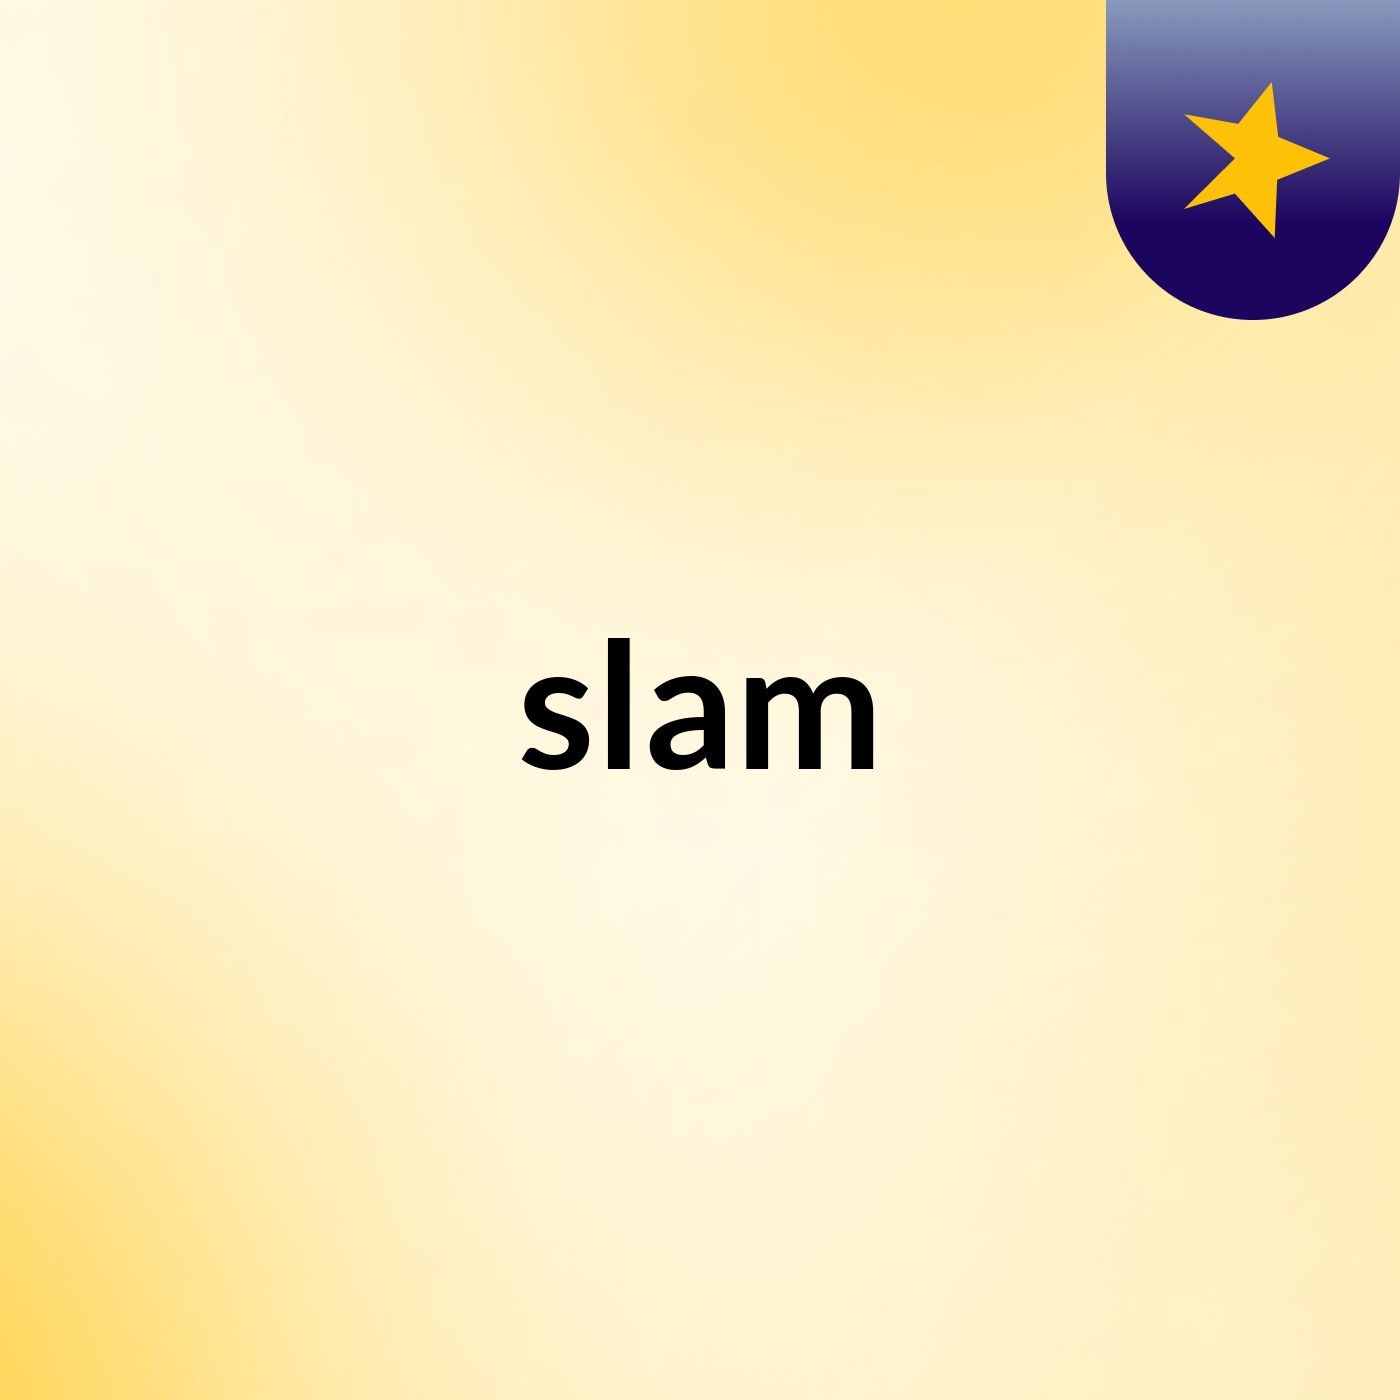 slam